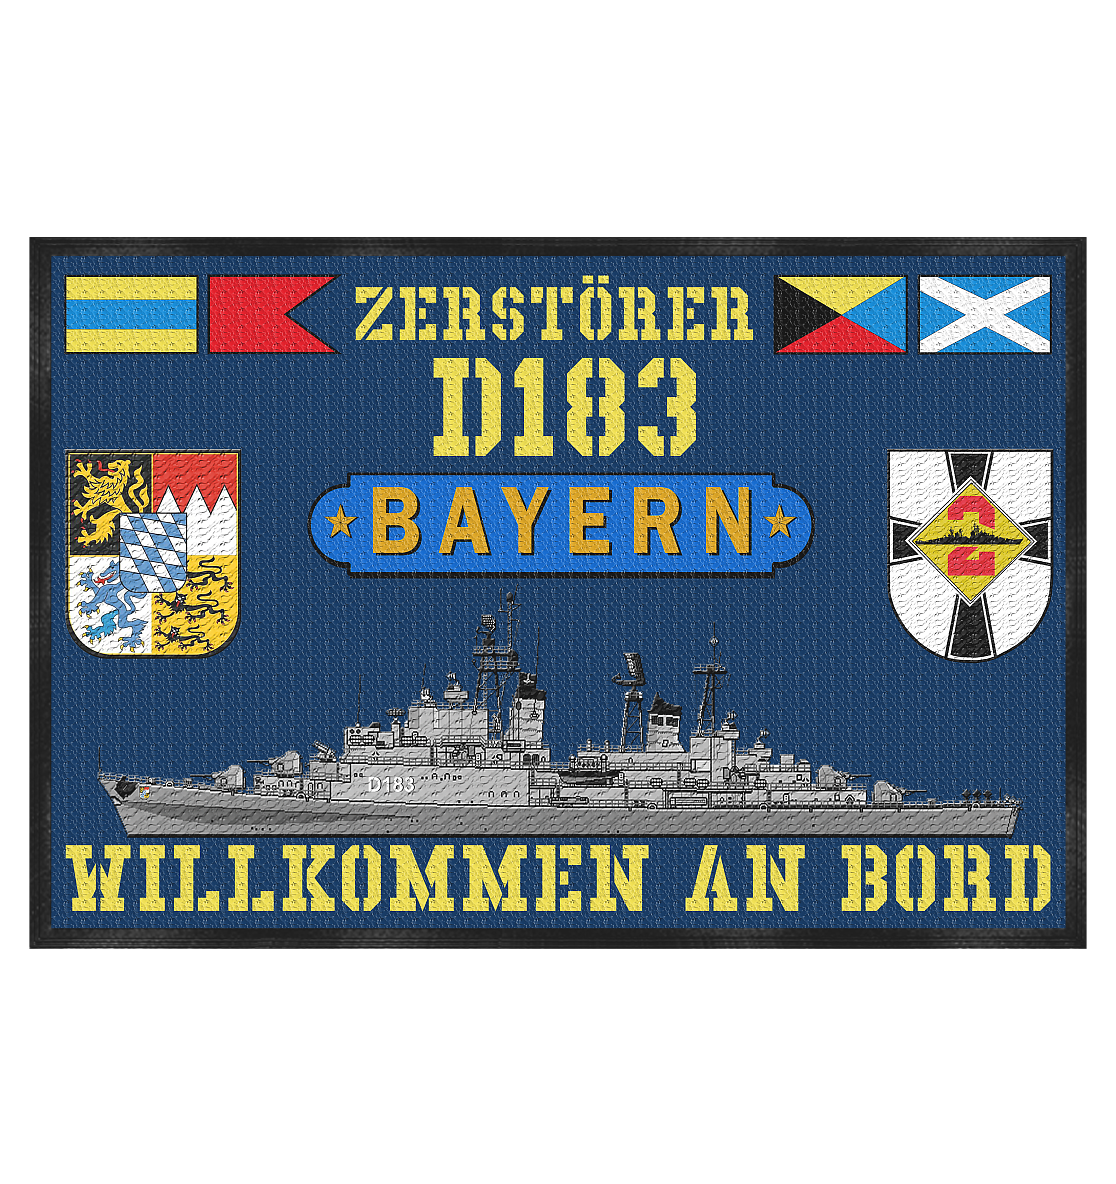 Zerstörer D183 BAYERN altes Rufzeichen - Fußmatte 60x40cm